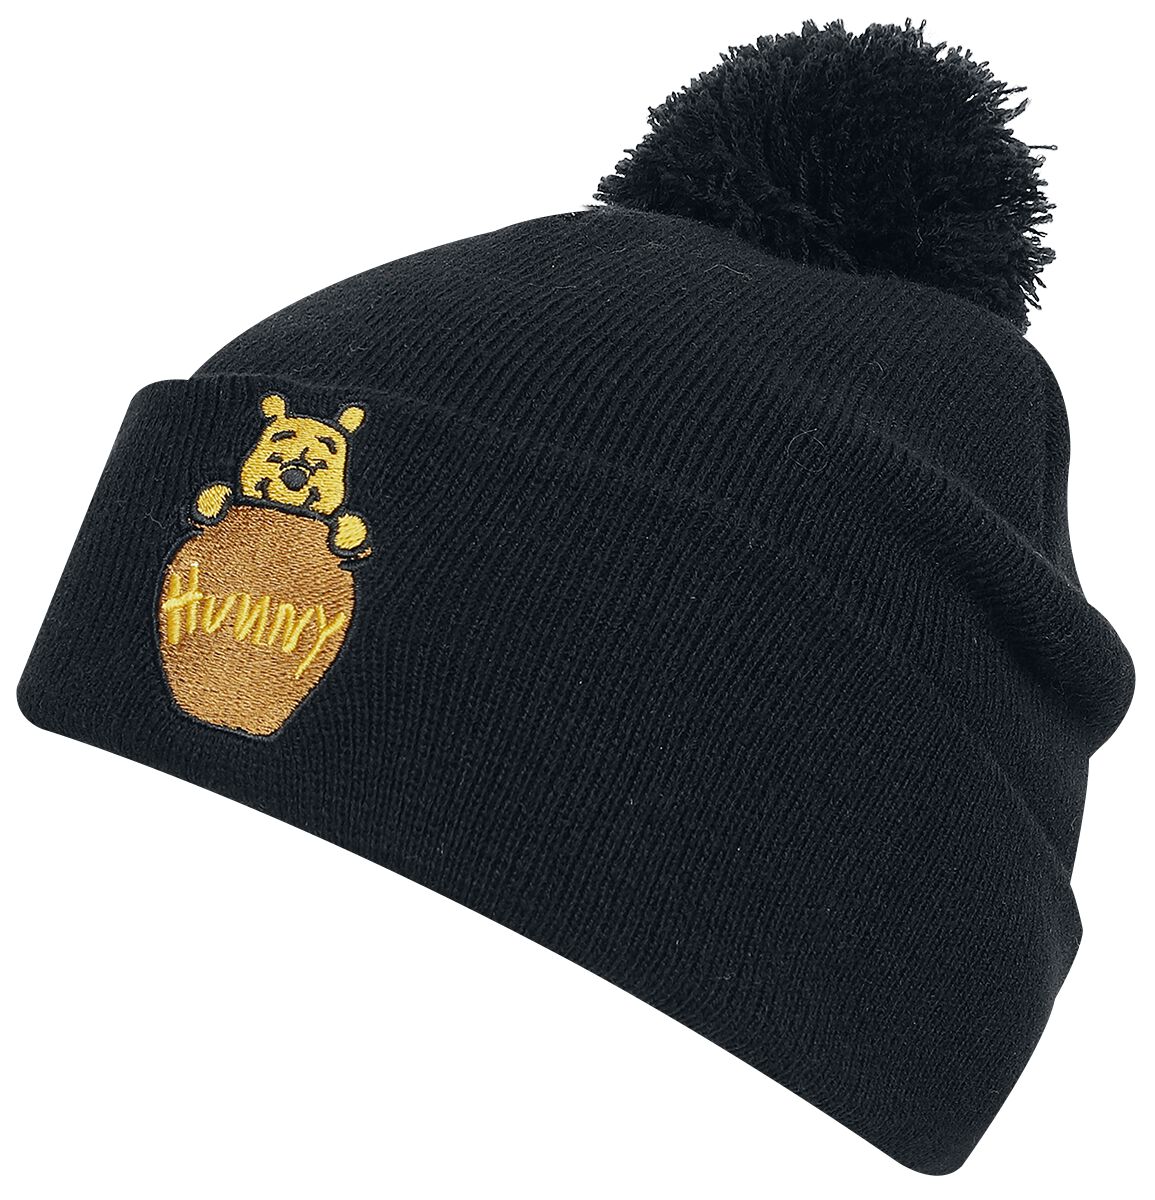 Winnie The Pooh - Disney Mütze - Hunny - schwarz  - EMP exklusives Merchandise!